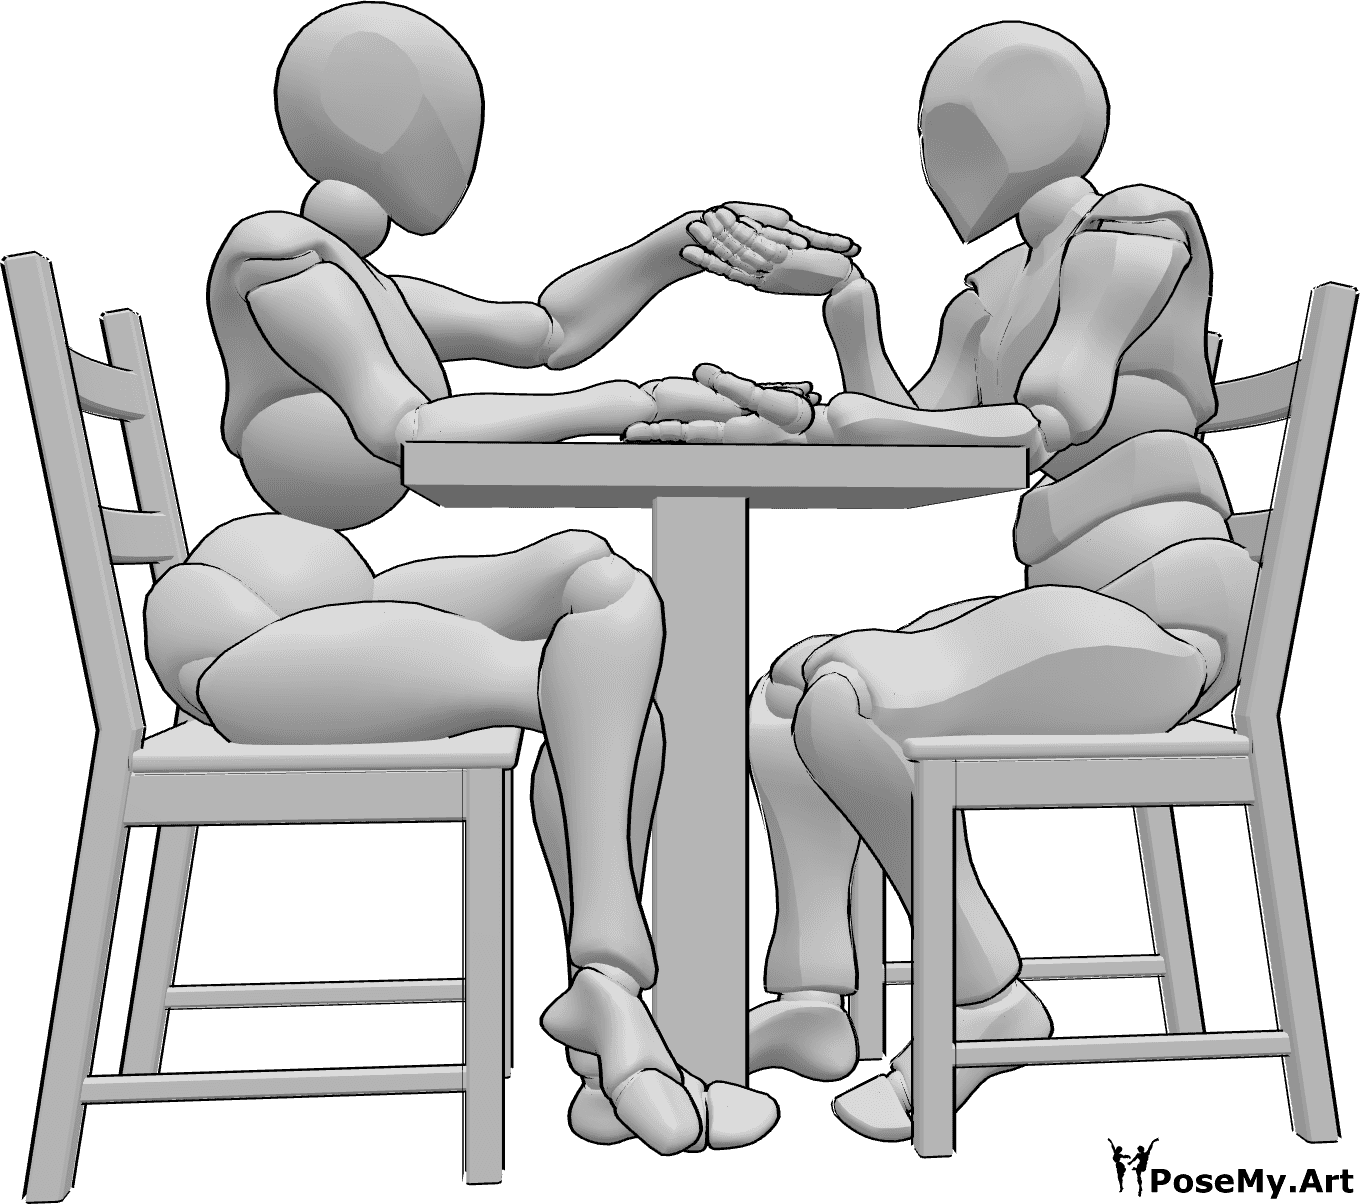 Riferimento alle pose- Posizione seduta con le mani in mano - Una donna e un uomo sono seduti a un tavolo e si tengono per mano; l'uomo sta per baciare la mano sinistra della donna.